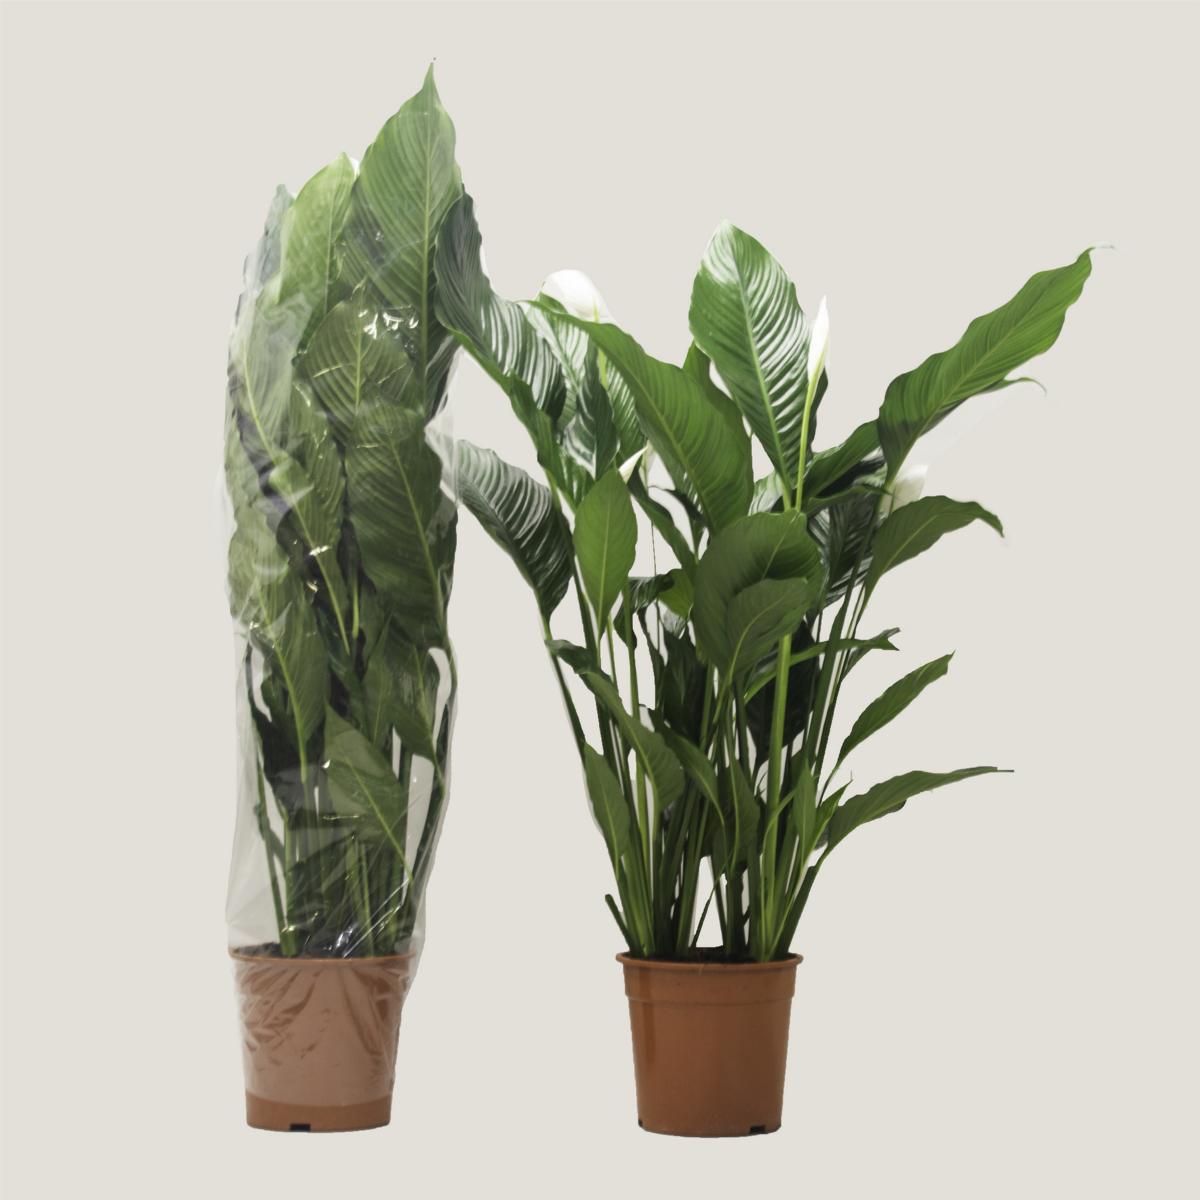 Spathiphyllum  - Einblatt Scheidenblatt Grünpflanze Zimmerpflanze bessere Raumlu